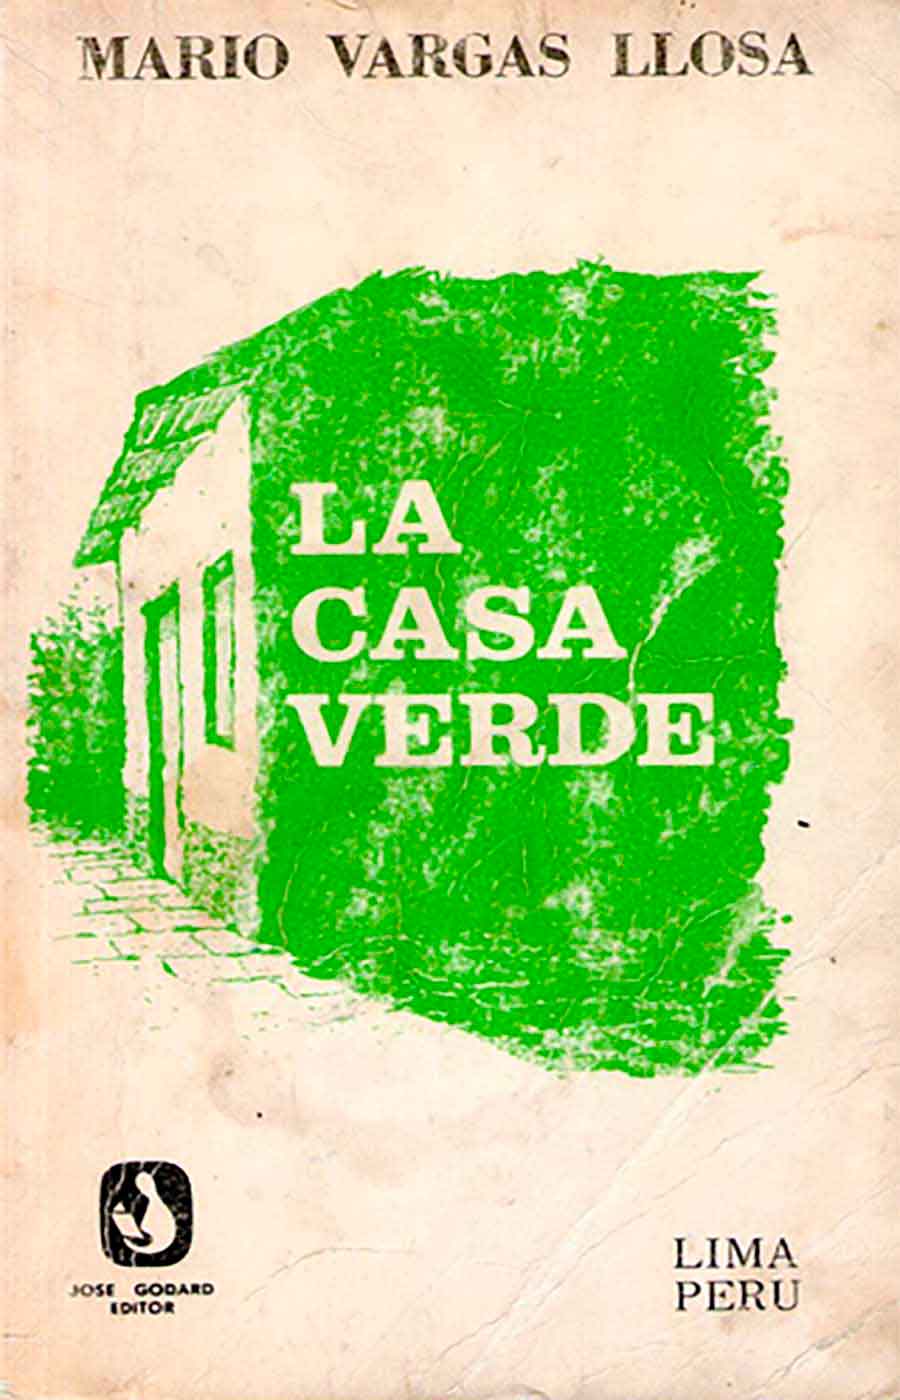 Portada de la novela La casa verde del laureado escritor Mario Vargas Llosa, segunda novela de Mario Vargas Llosa, Enlace de foto: https://portal.andina.pe/EDPFotografia3/thumbnail/2019/03/28/000574333M.jpg